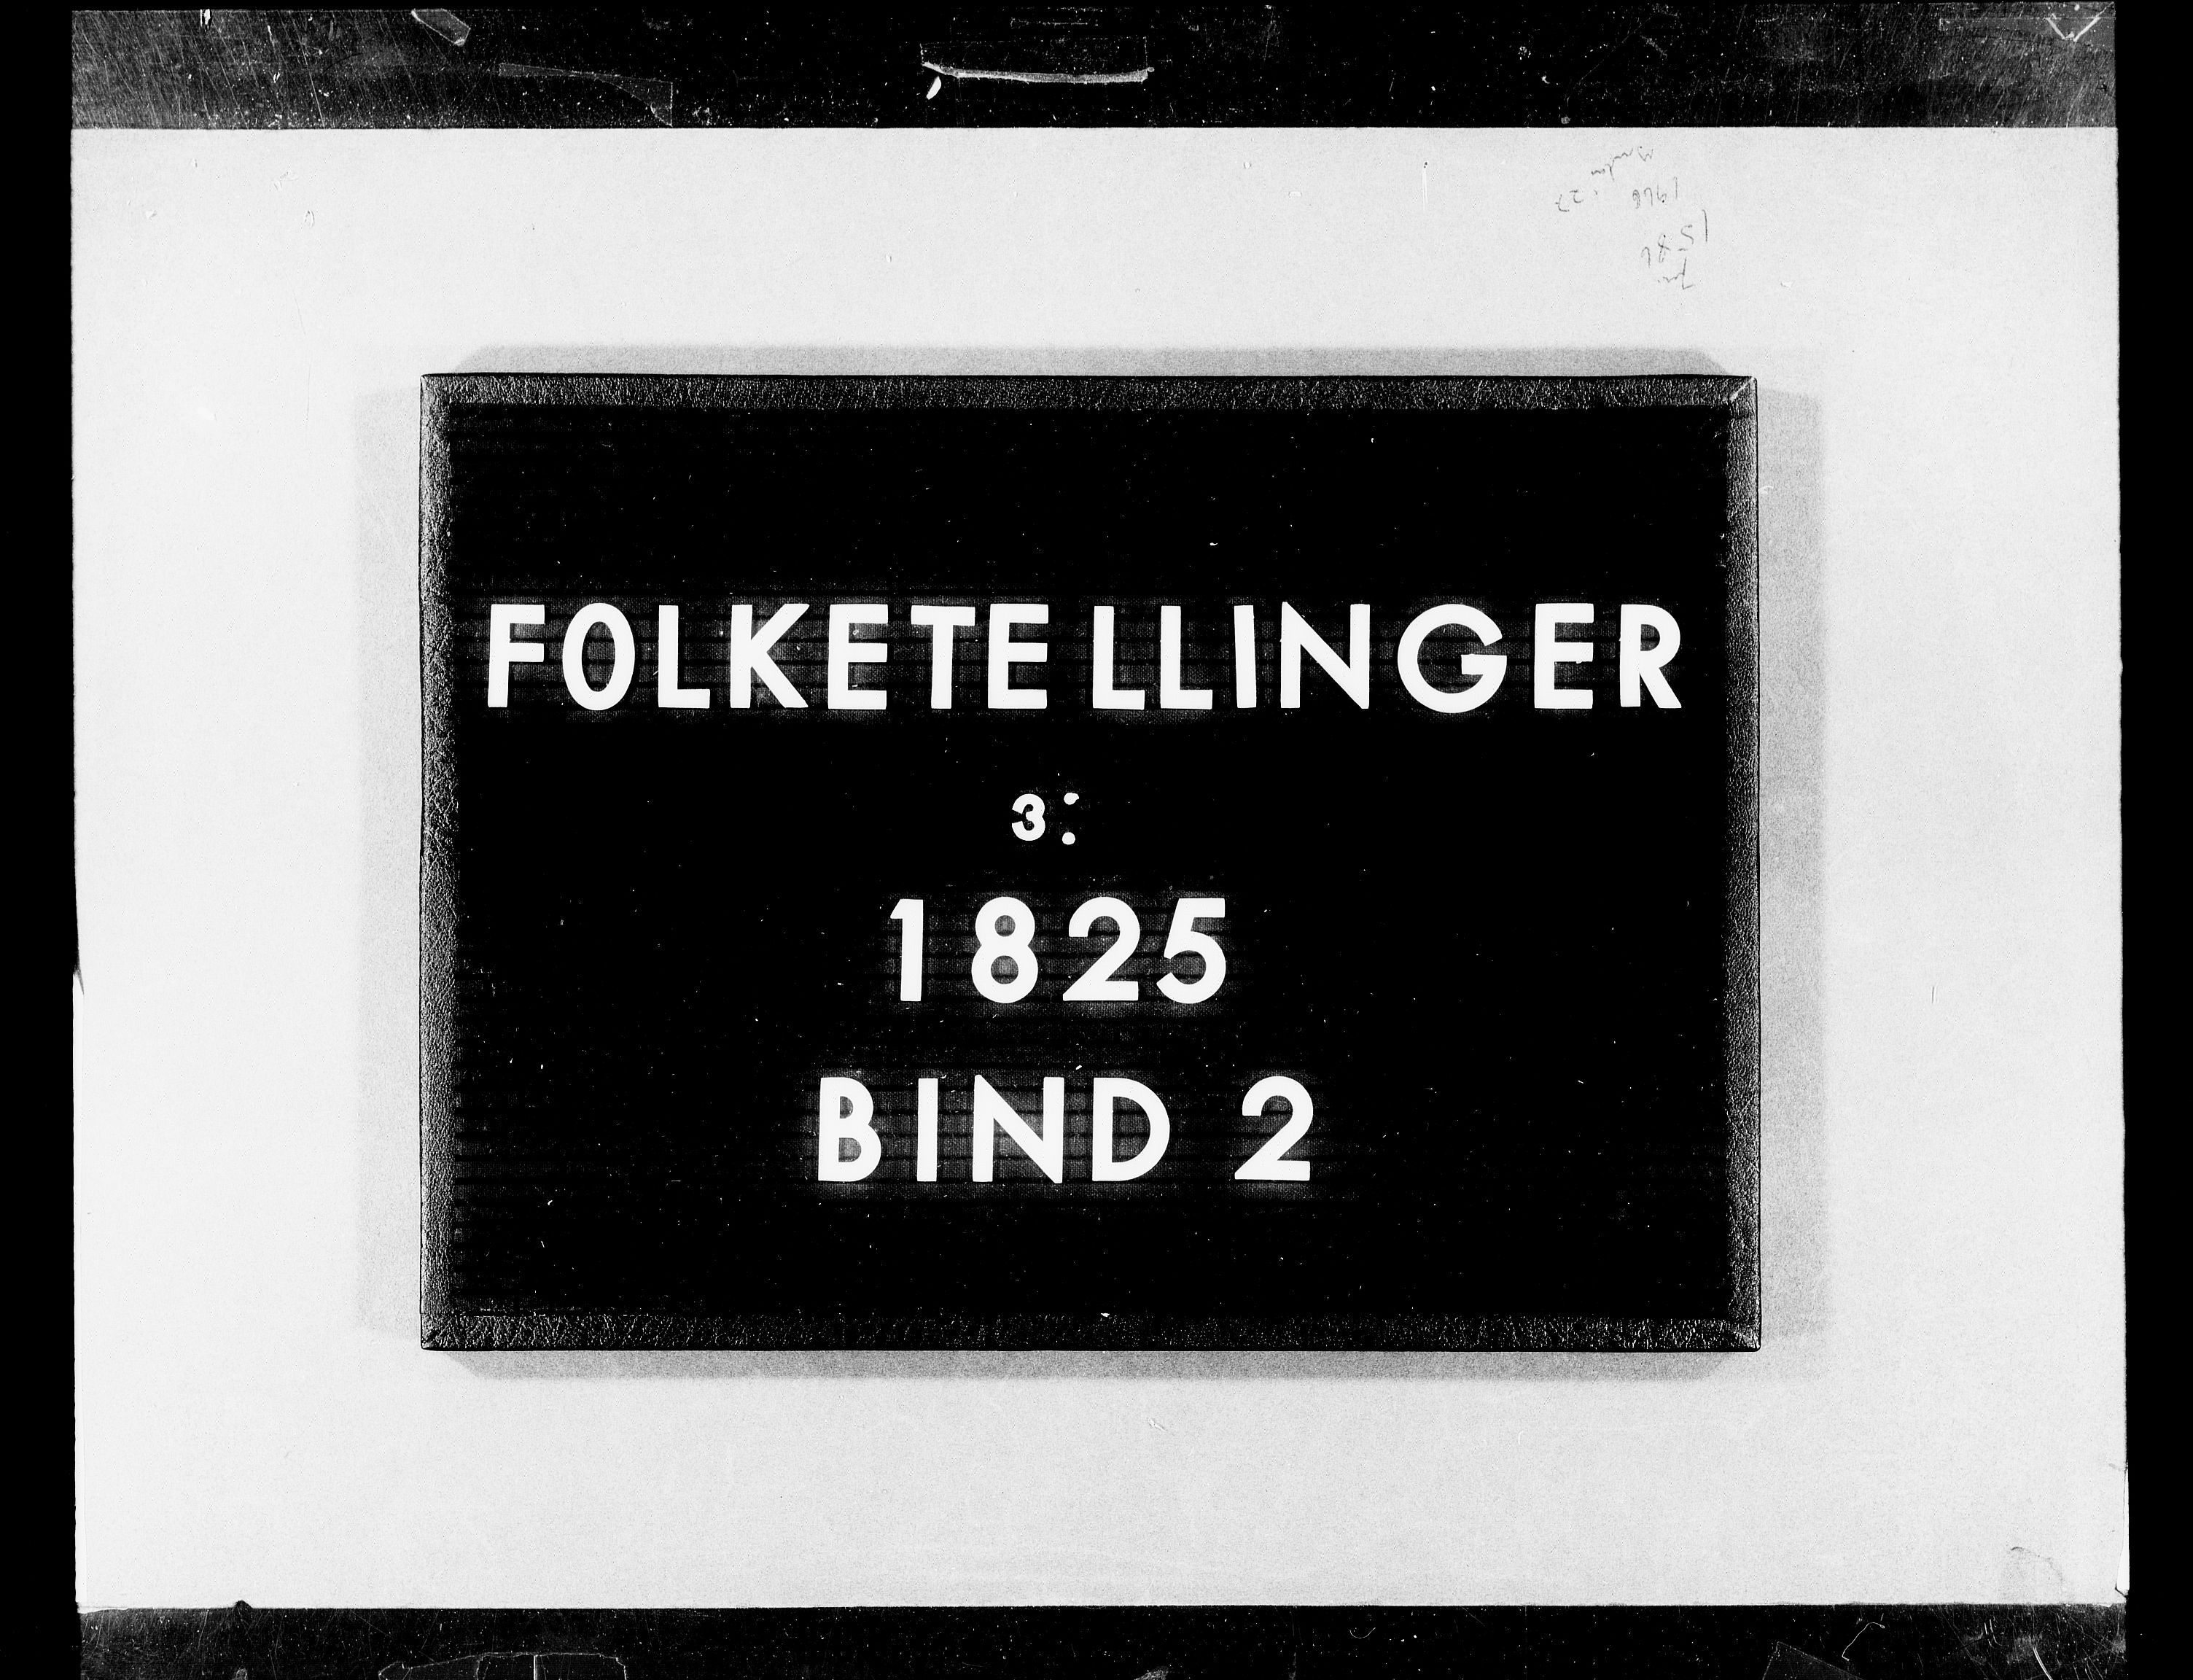 RA, Folketellingen 1825, bind 2: Hovedlister, 1825